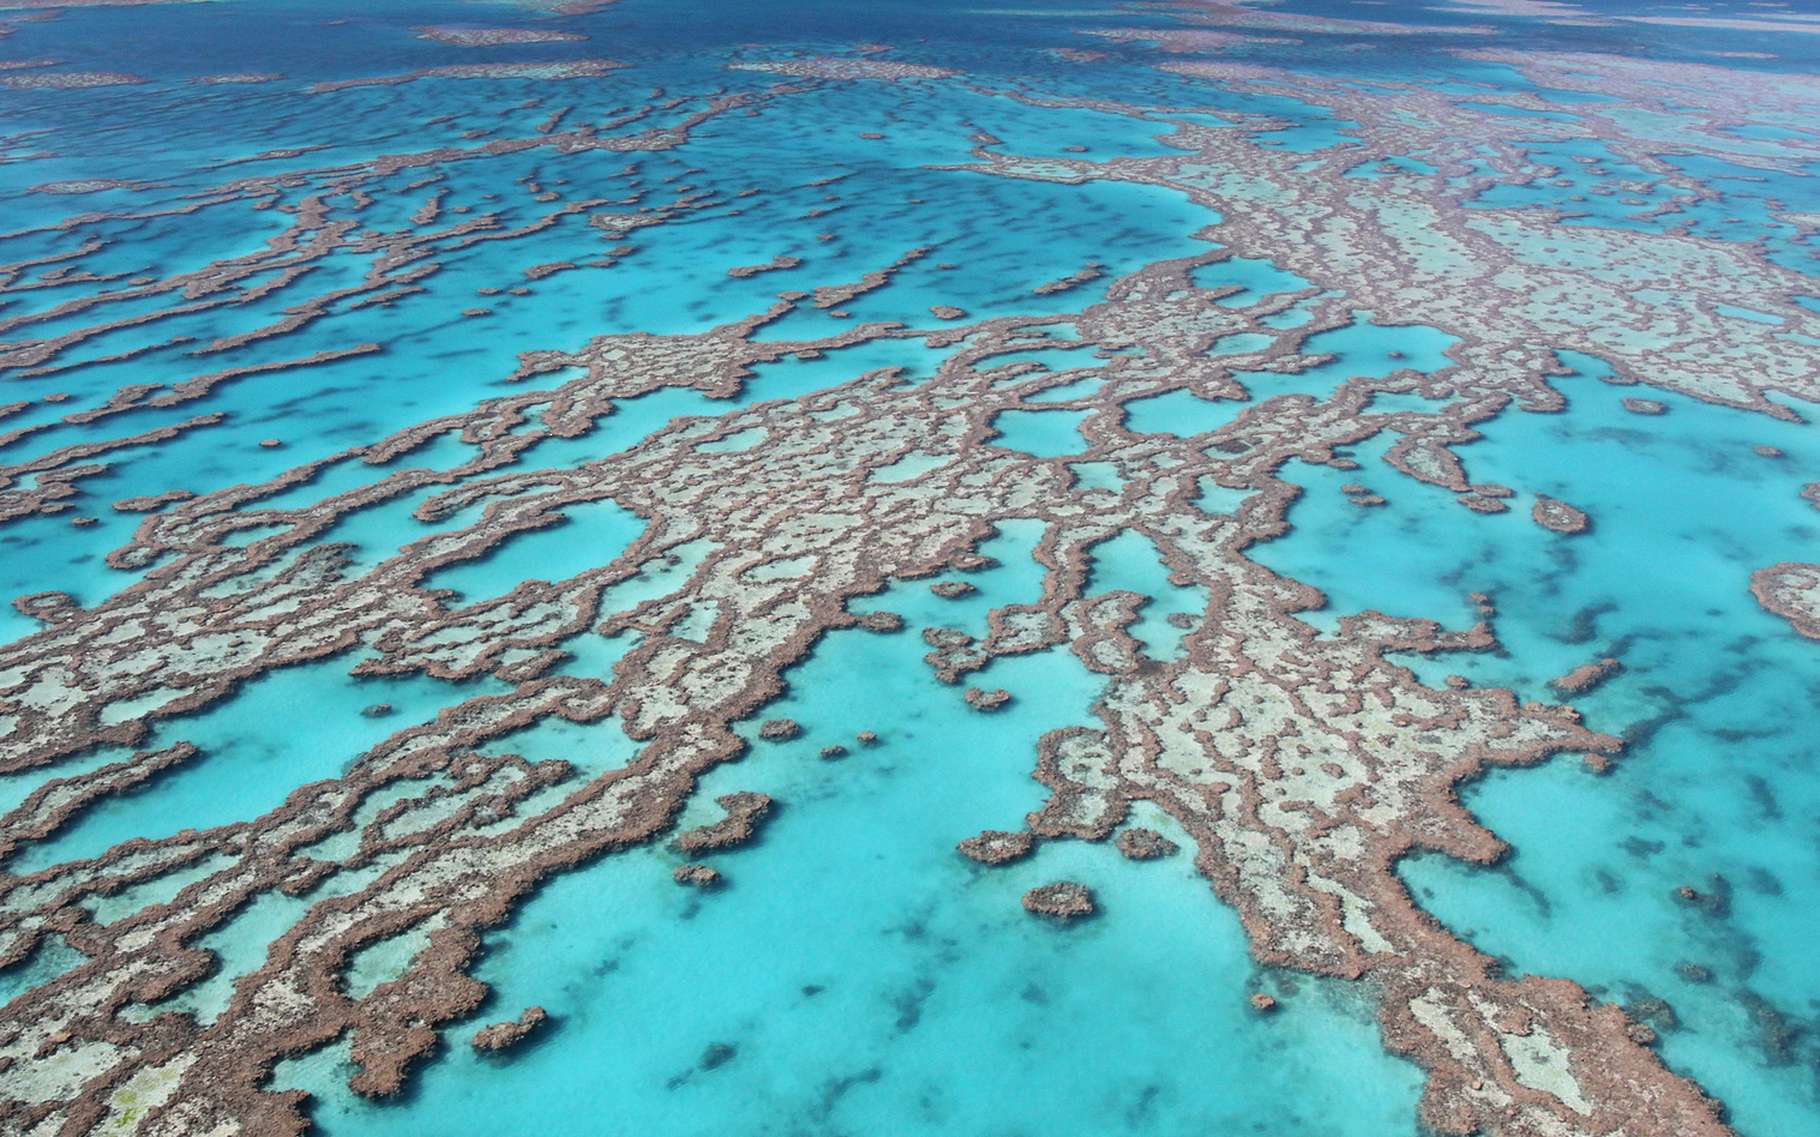 Vue aérienne de la Grande Barrière de corail, en Australie. Cet écosystème, précieux pour de nombreuses espèces, est menacé par l’acidification des océans et le réchauffement climatique (50 % de ses coraux ont disparu depuis 1985). © JC Photo, Shutterstock